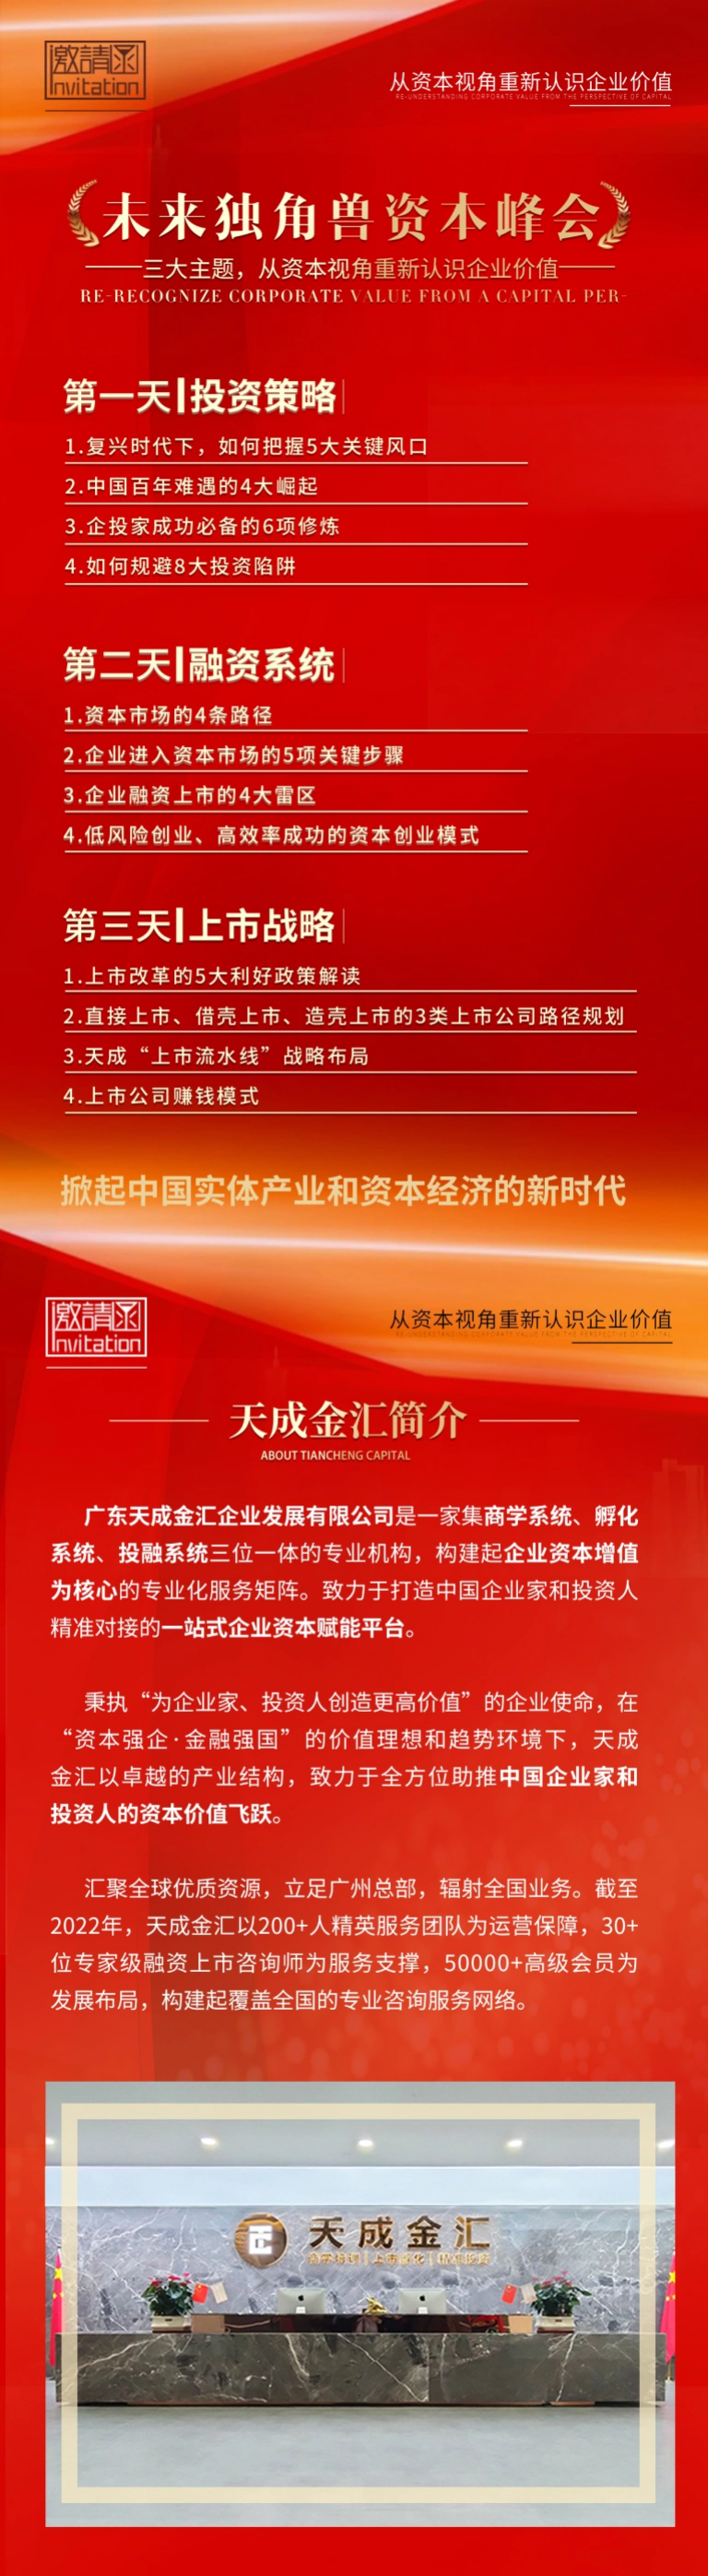 中国.成都3月14-16日《未来独角兽资本峰会》